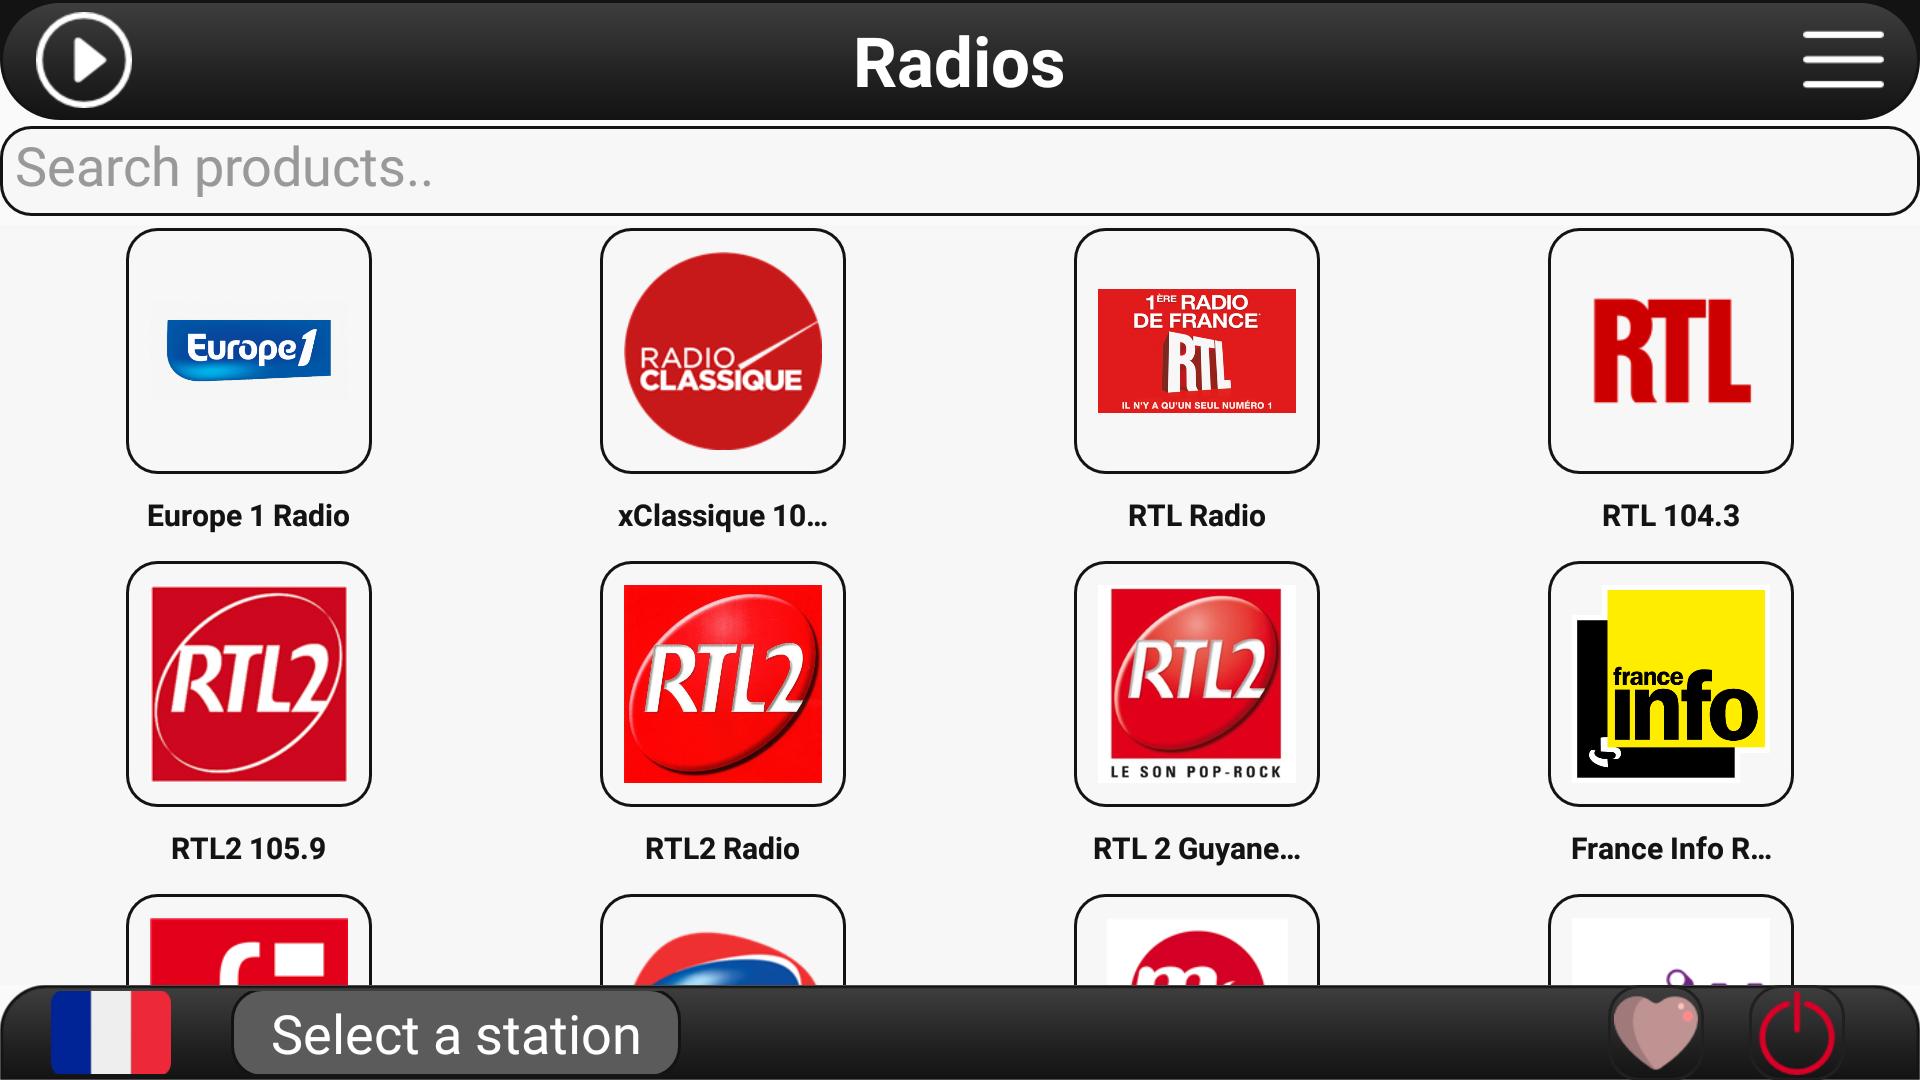 RTL радио. Радио богатырь ФМ. Radio Europe 1. Хф радио ФМ. Радио фм ижевск